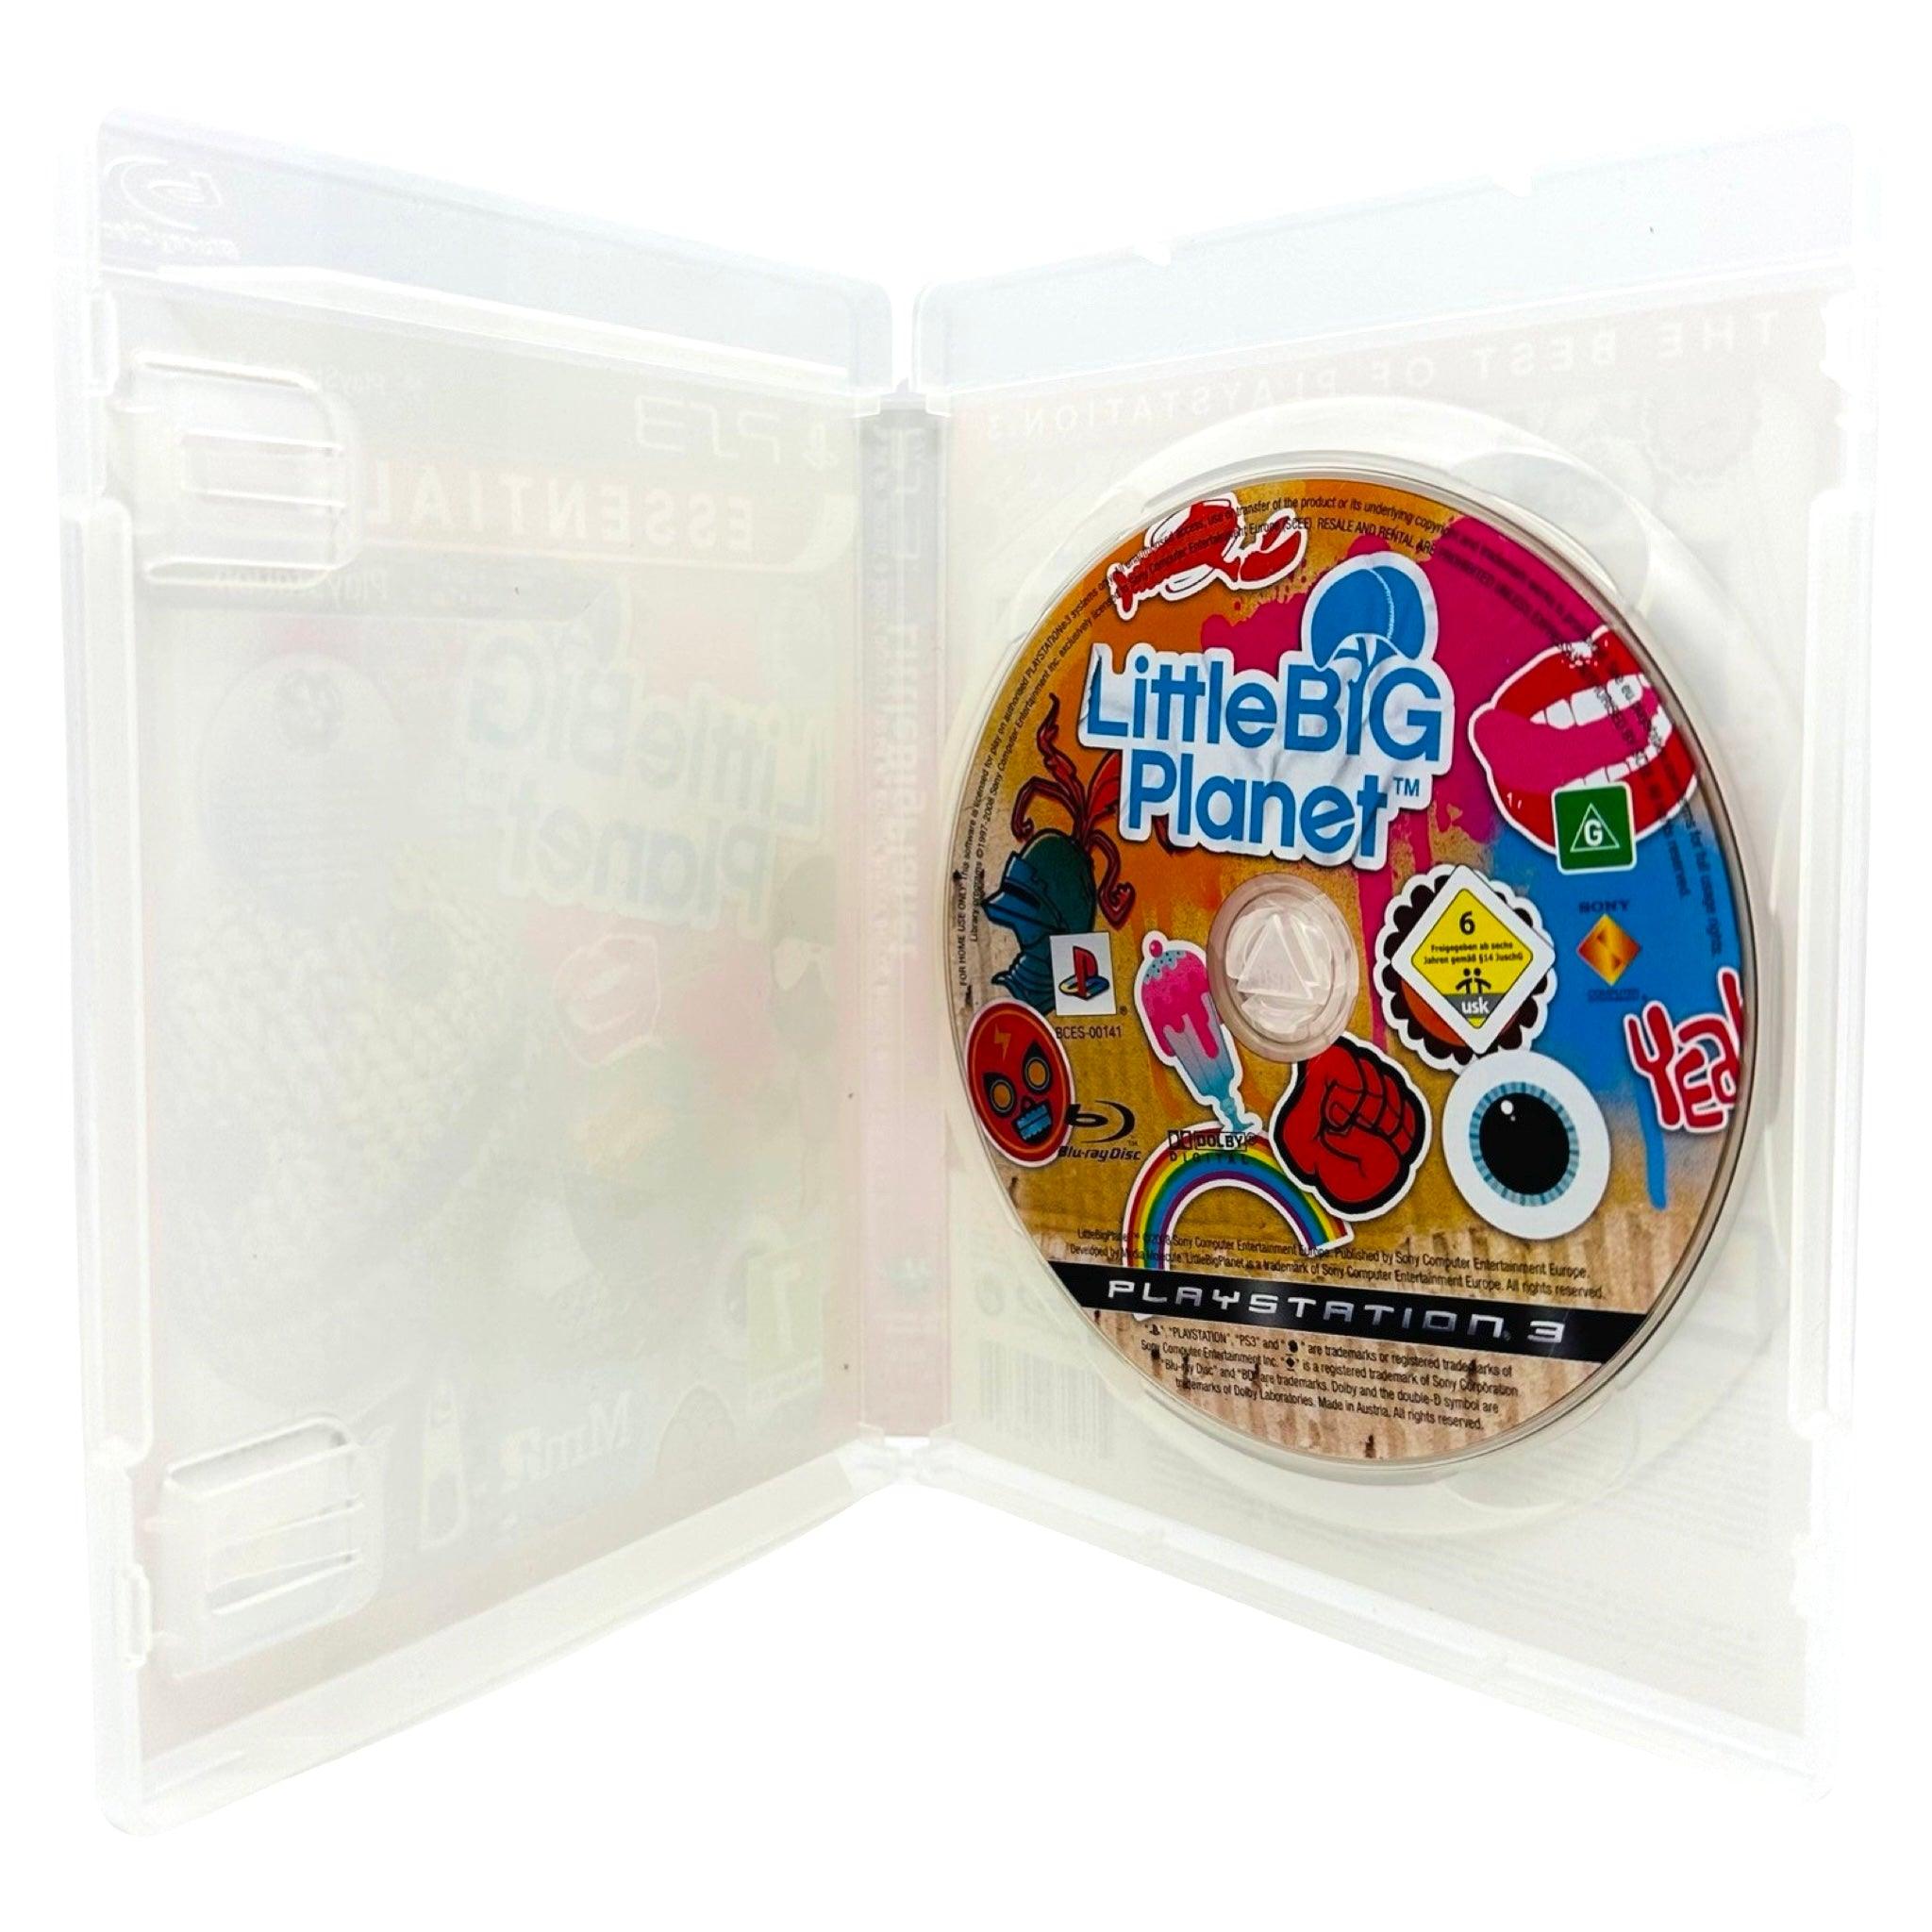 PS3: LittleBigPlanet - RetroGaming.no